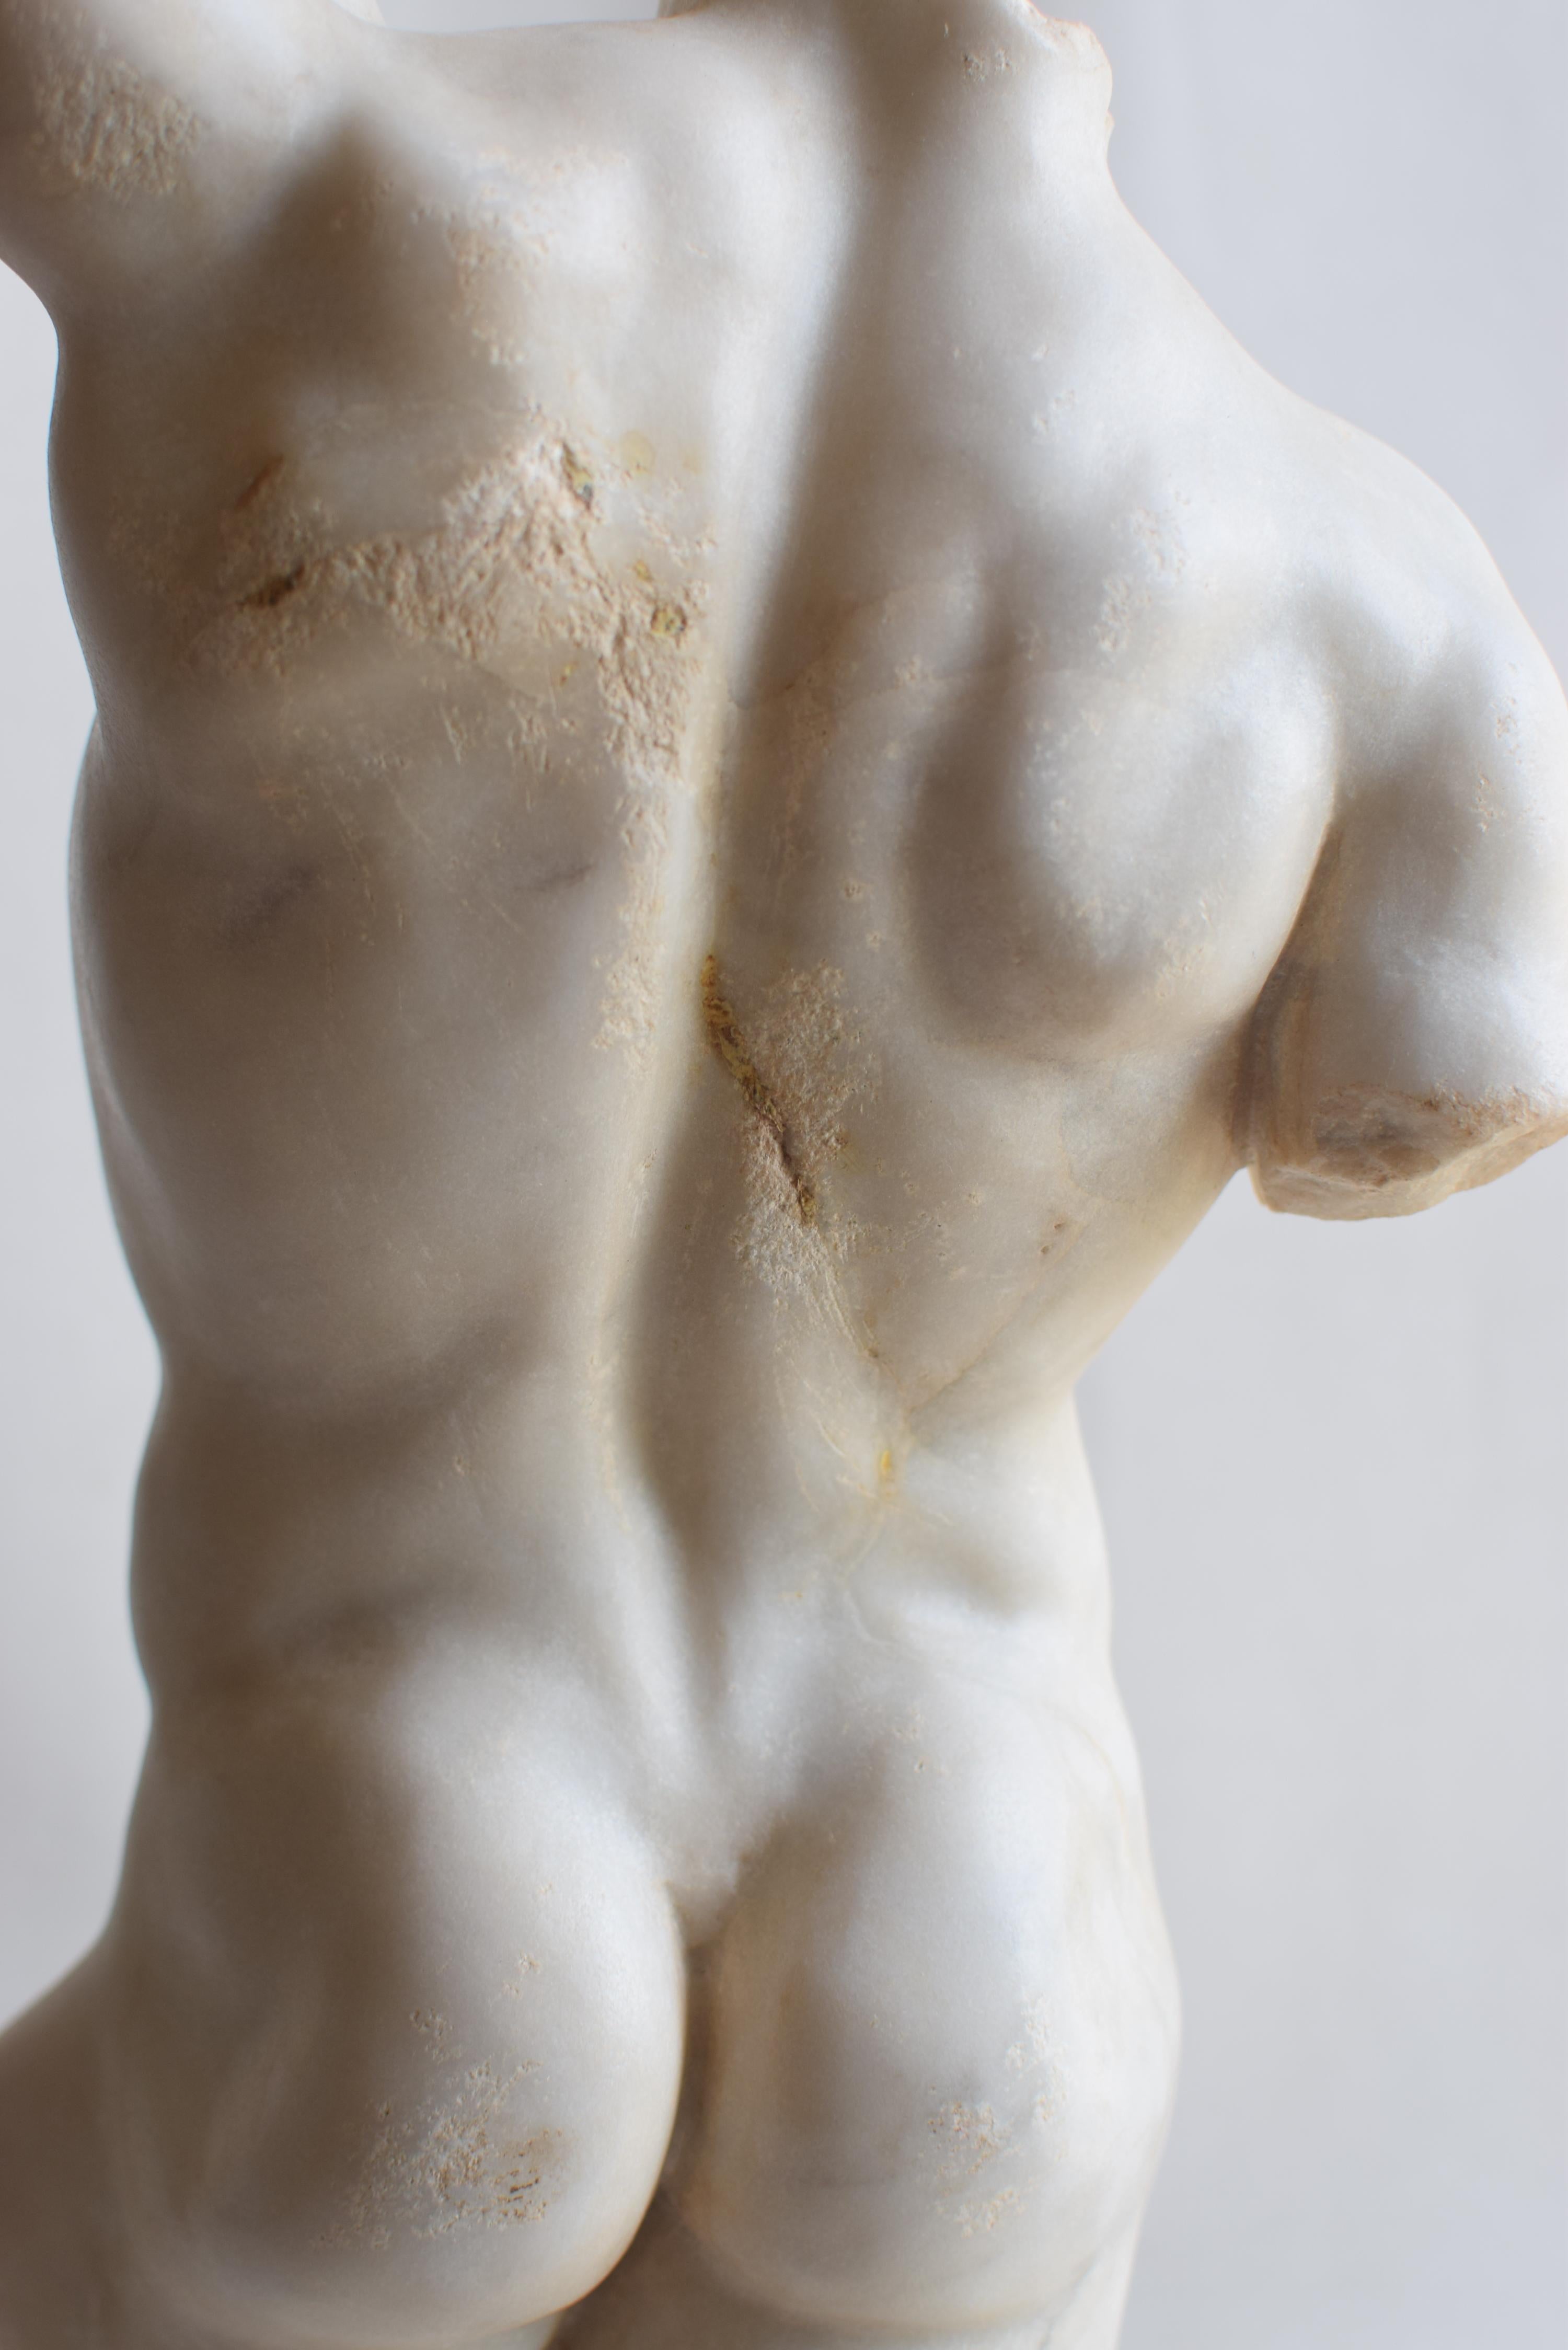 Marble Torso maschile classico in marmo bianco di Carrara For Sale